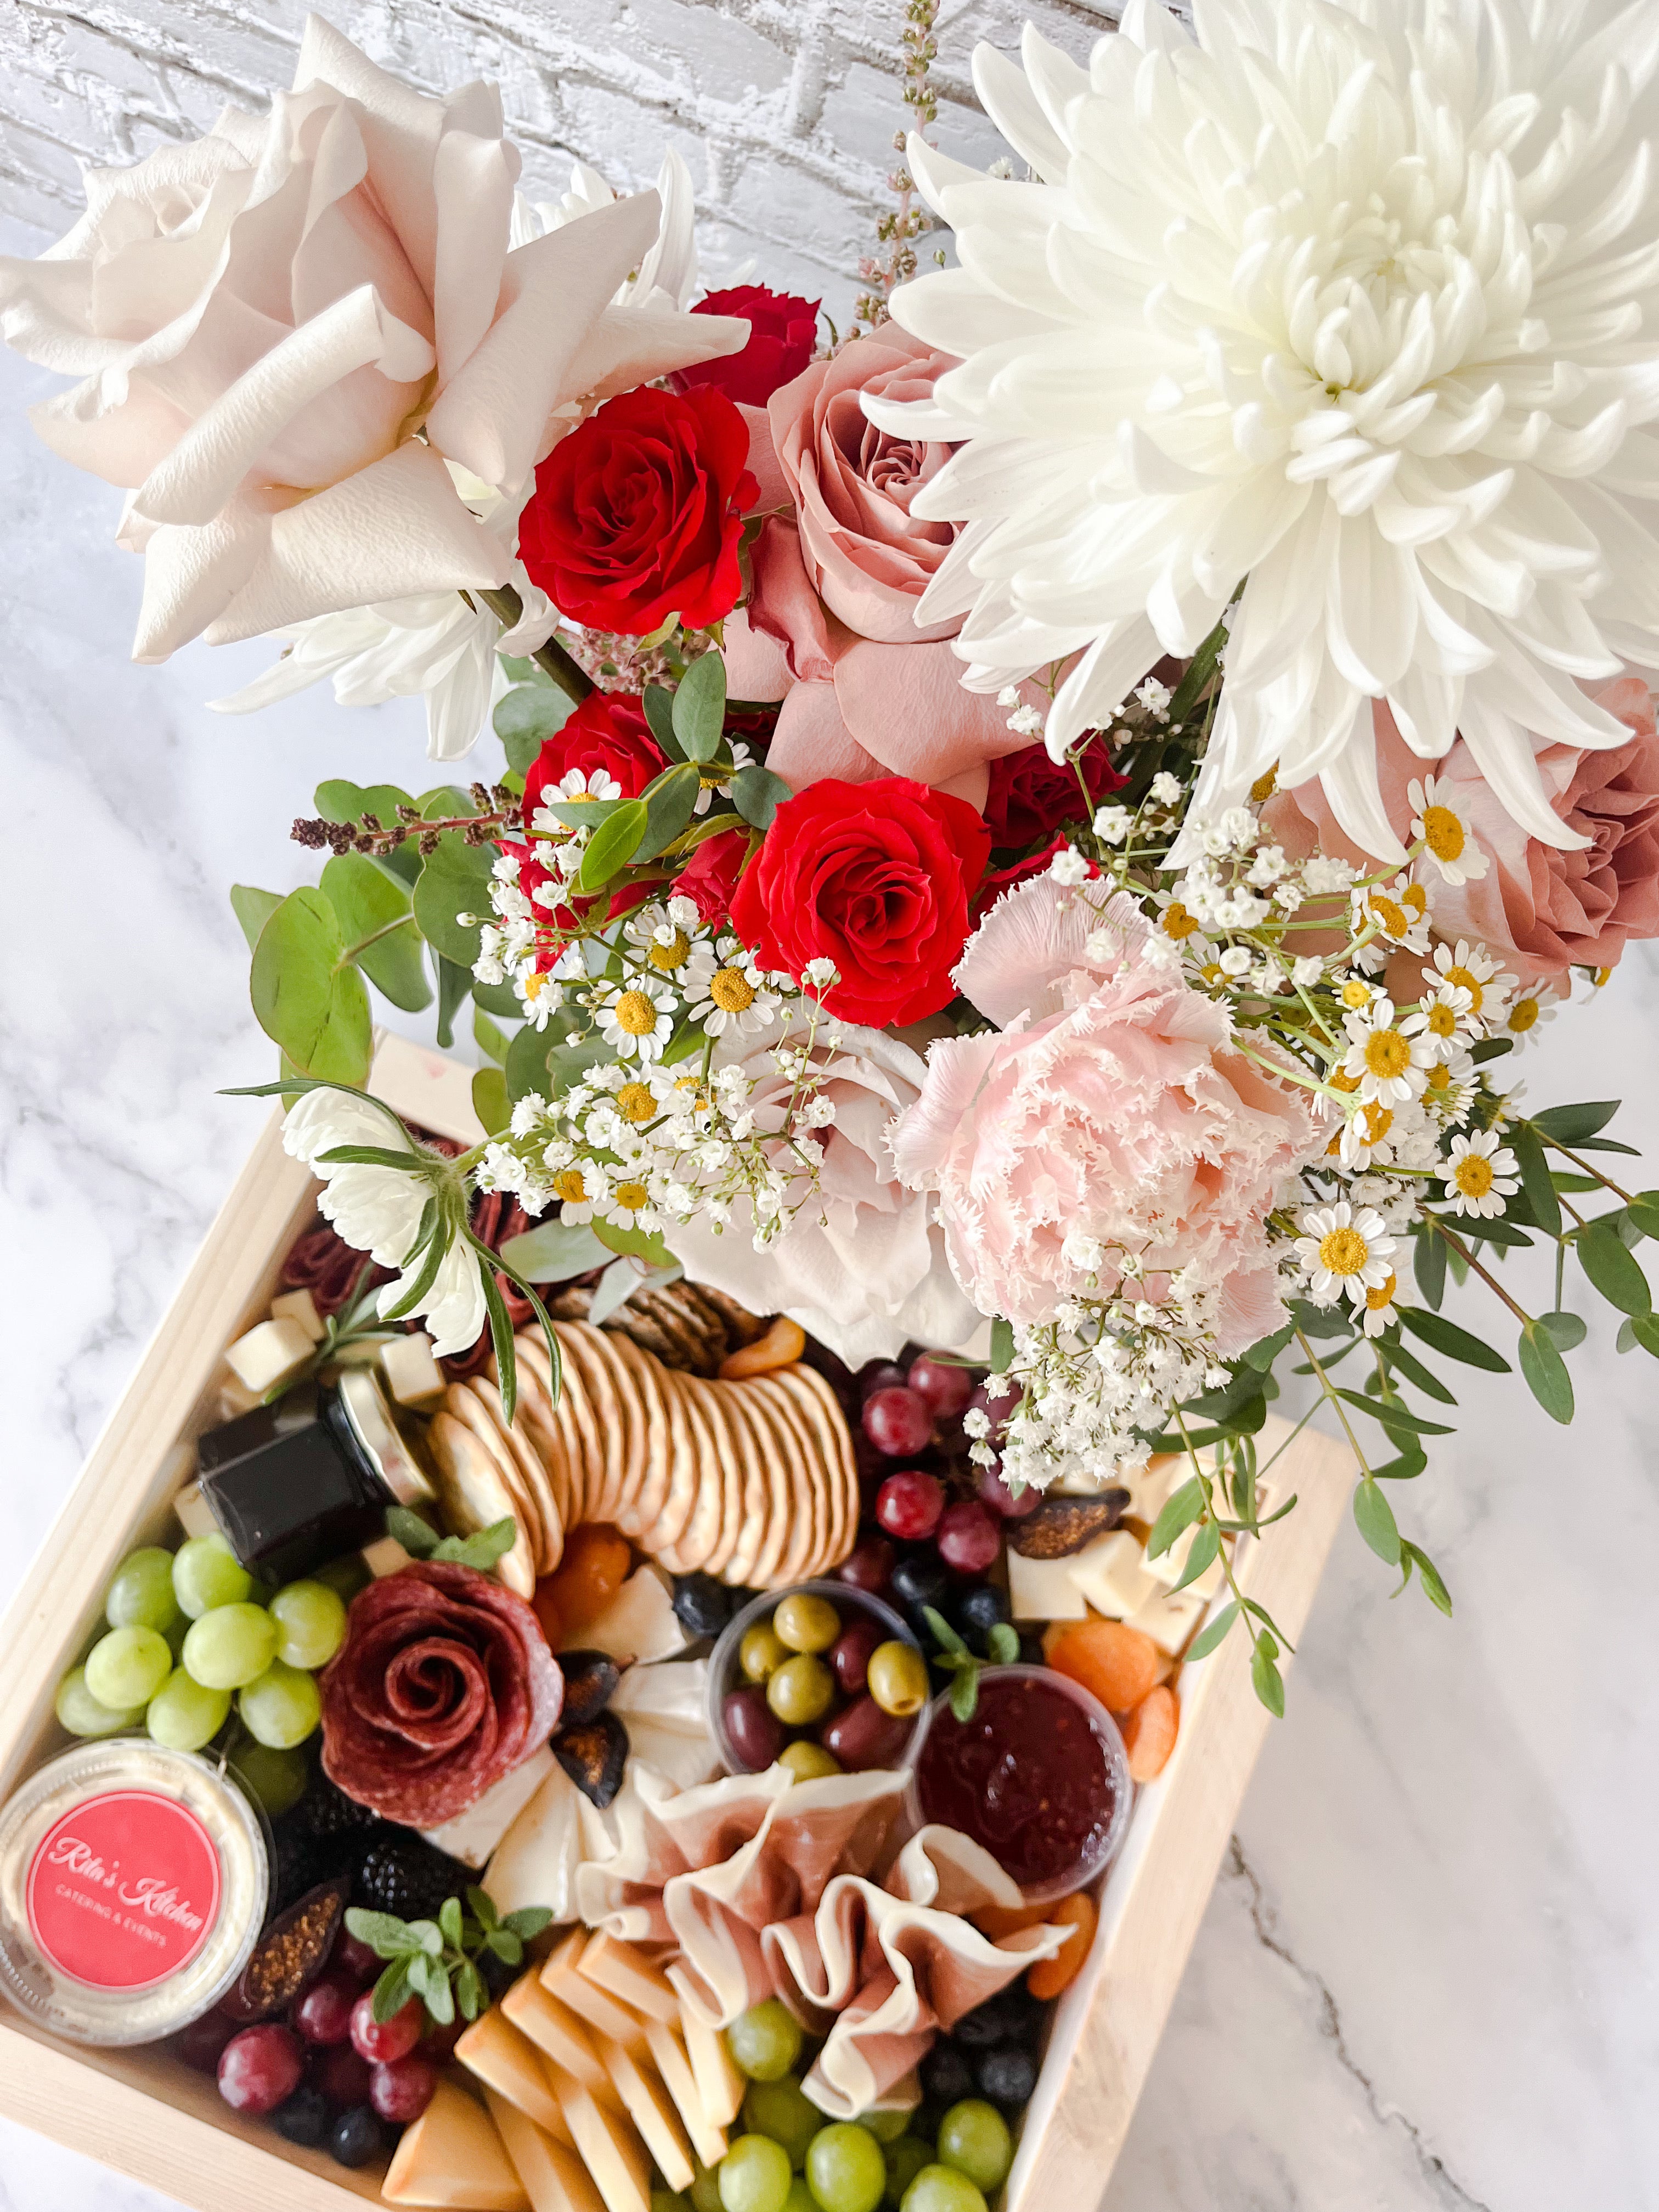 Box with Floral arrangements